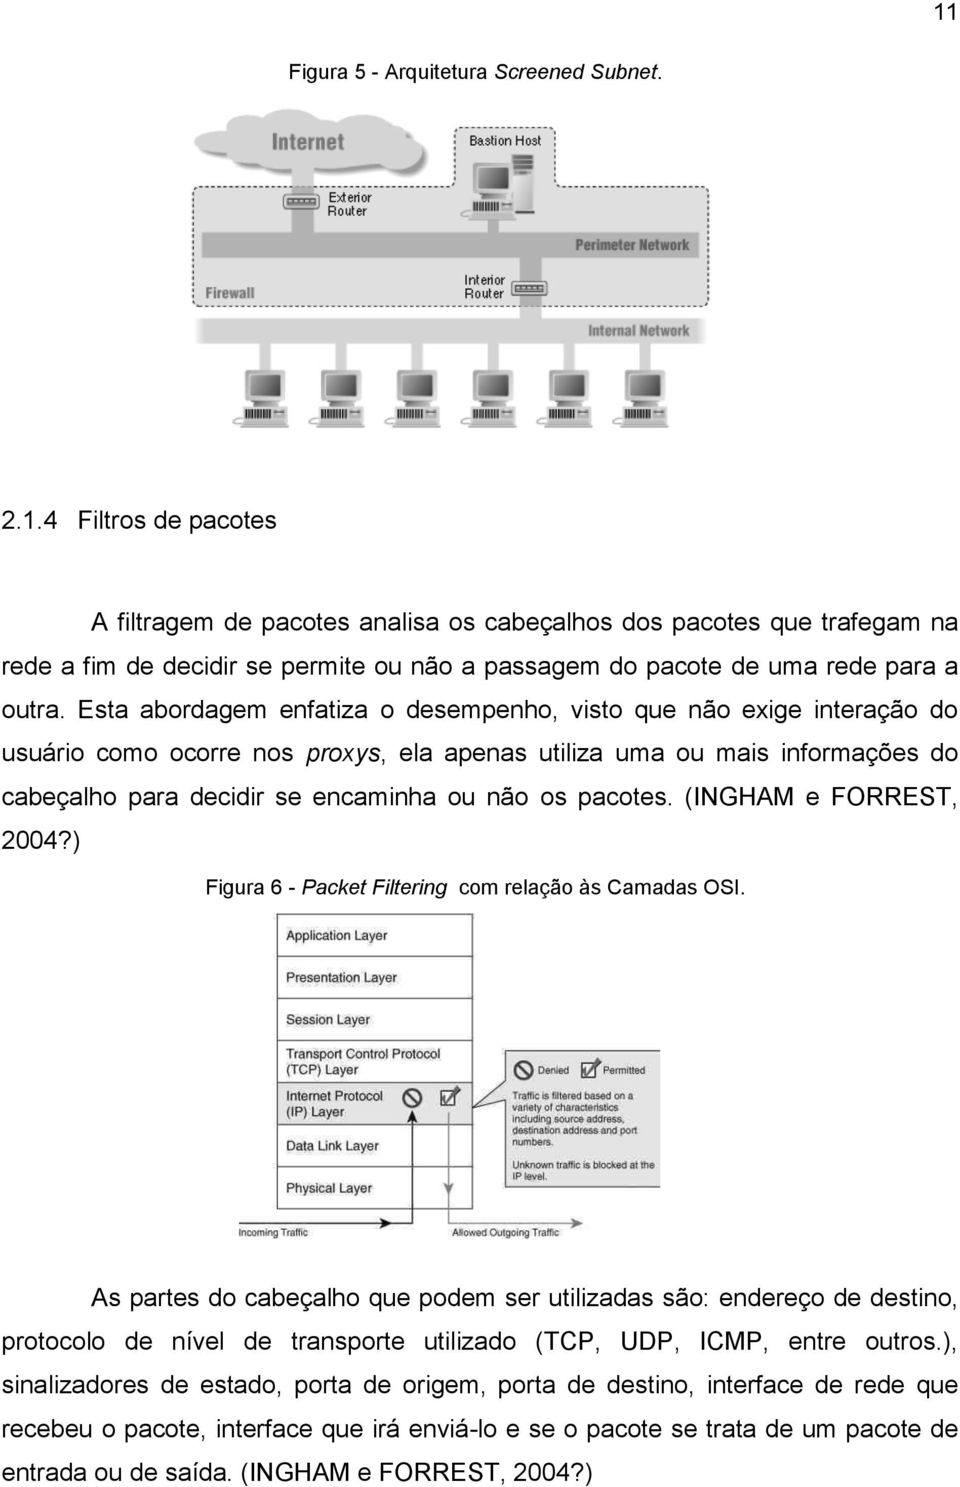 pacotes. (INGHAM e FORREST, 2004?) Figura 6 - Packet Filtering com relação às Camadas OSI.